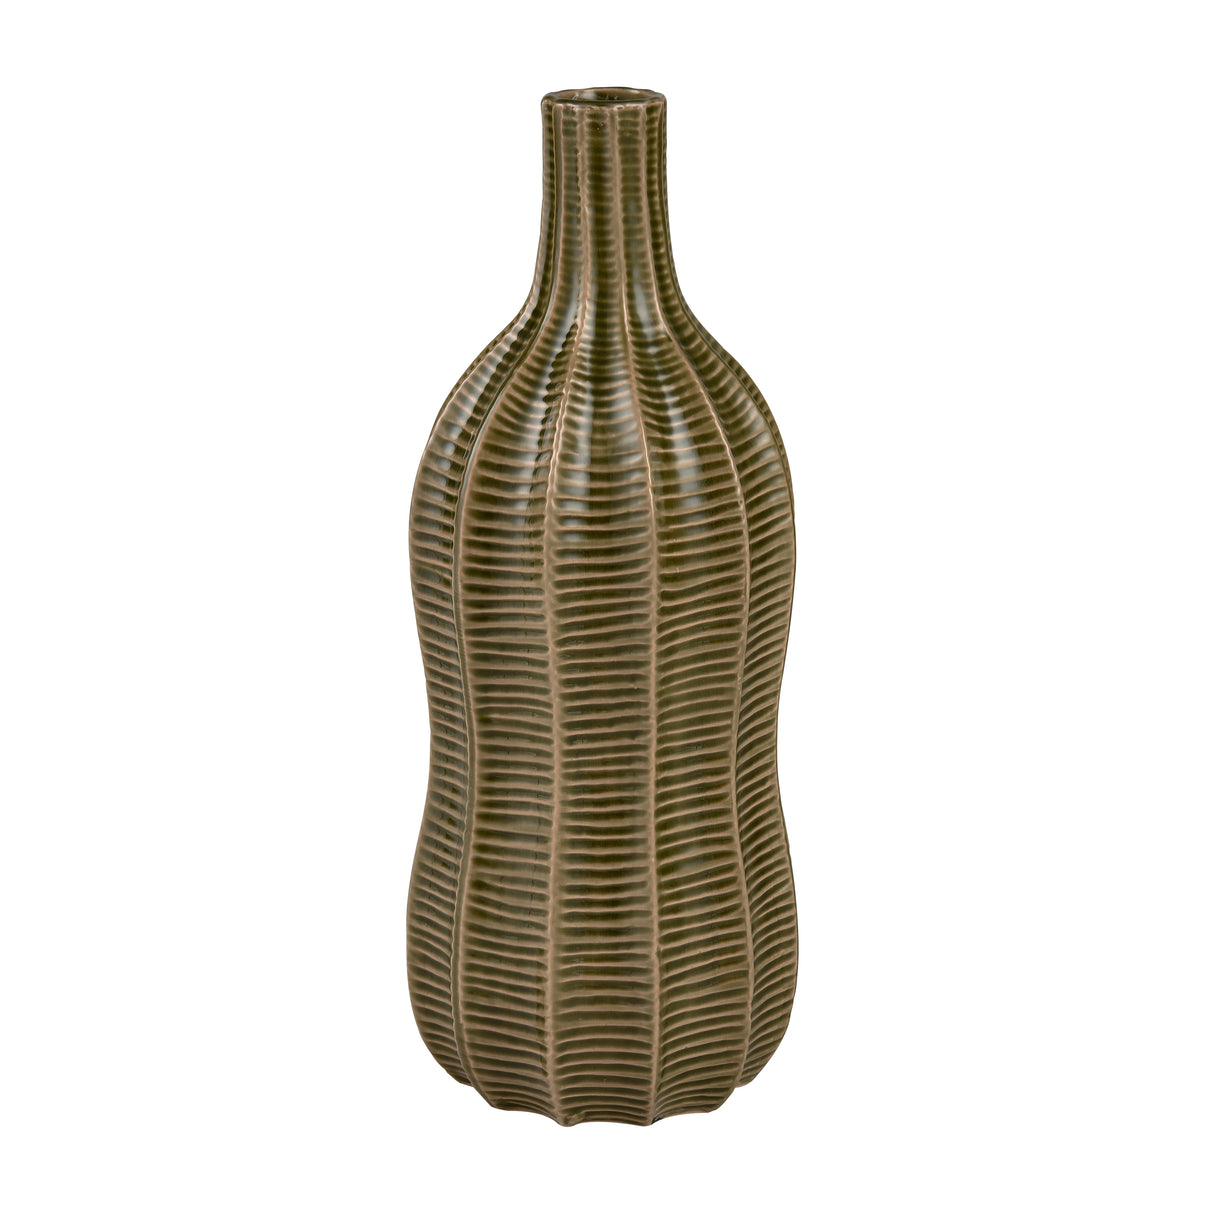 Elk S0017-9199 Collier Vase - Large